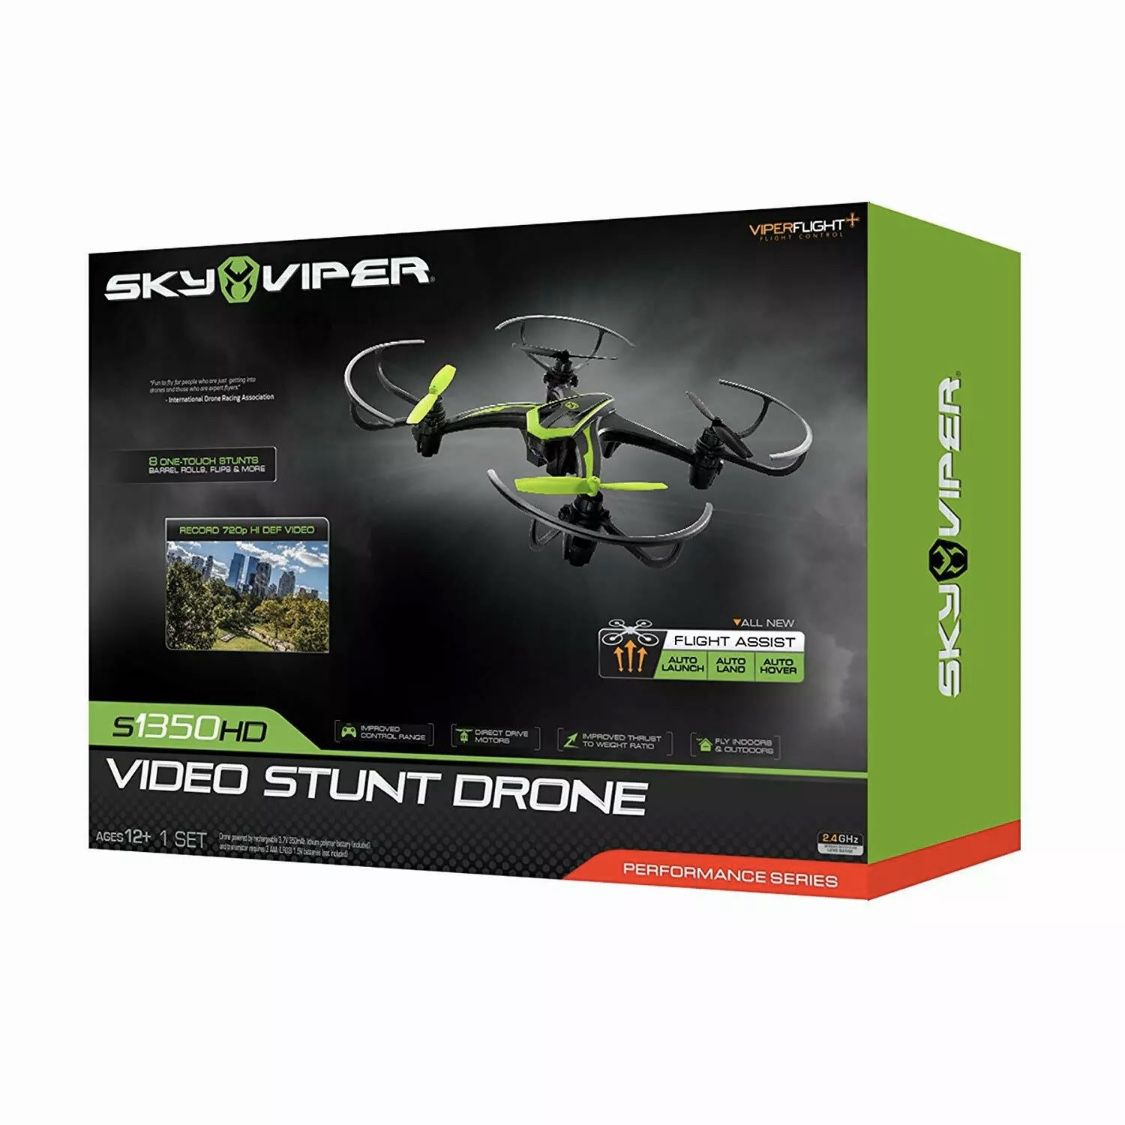 Sky Viper Video Stunt Drone